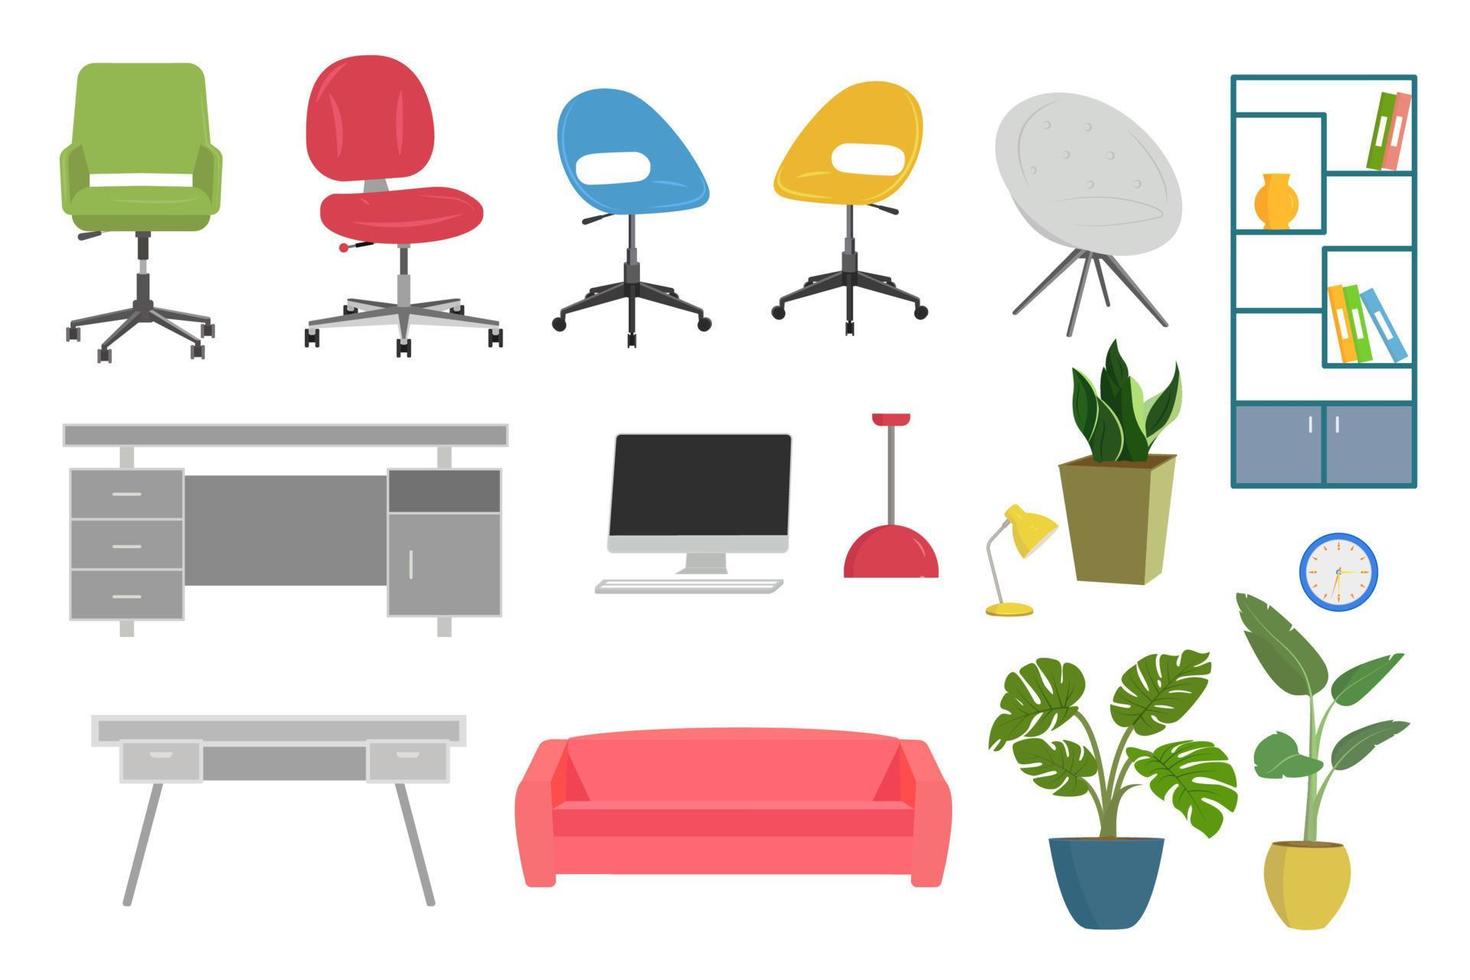 colección de muebles de oficina con mesas, sillas, lámparas, plantas y computadora. vector